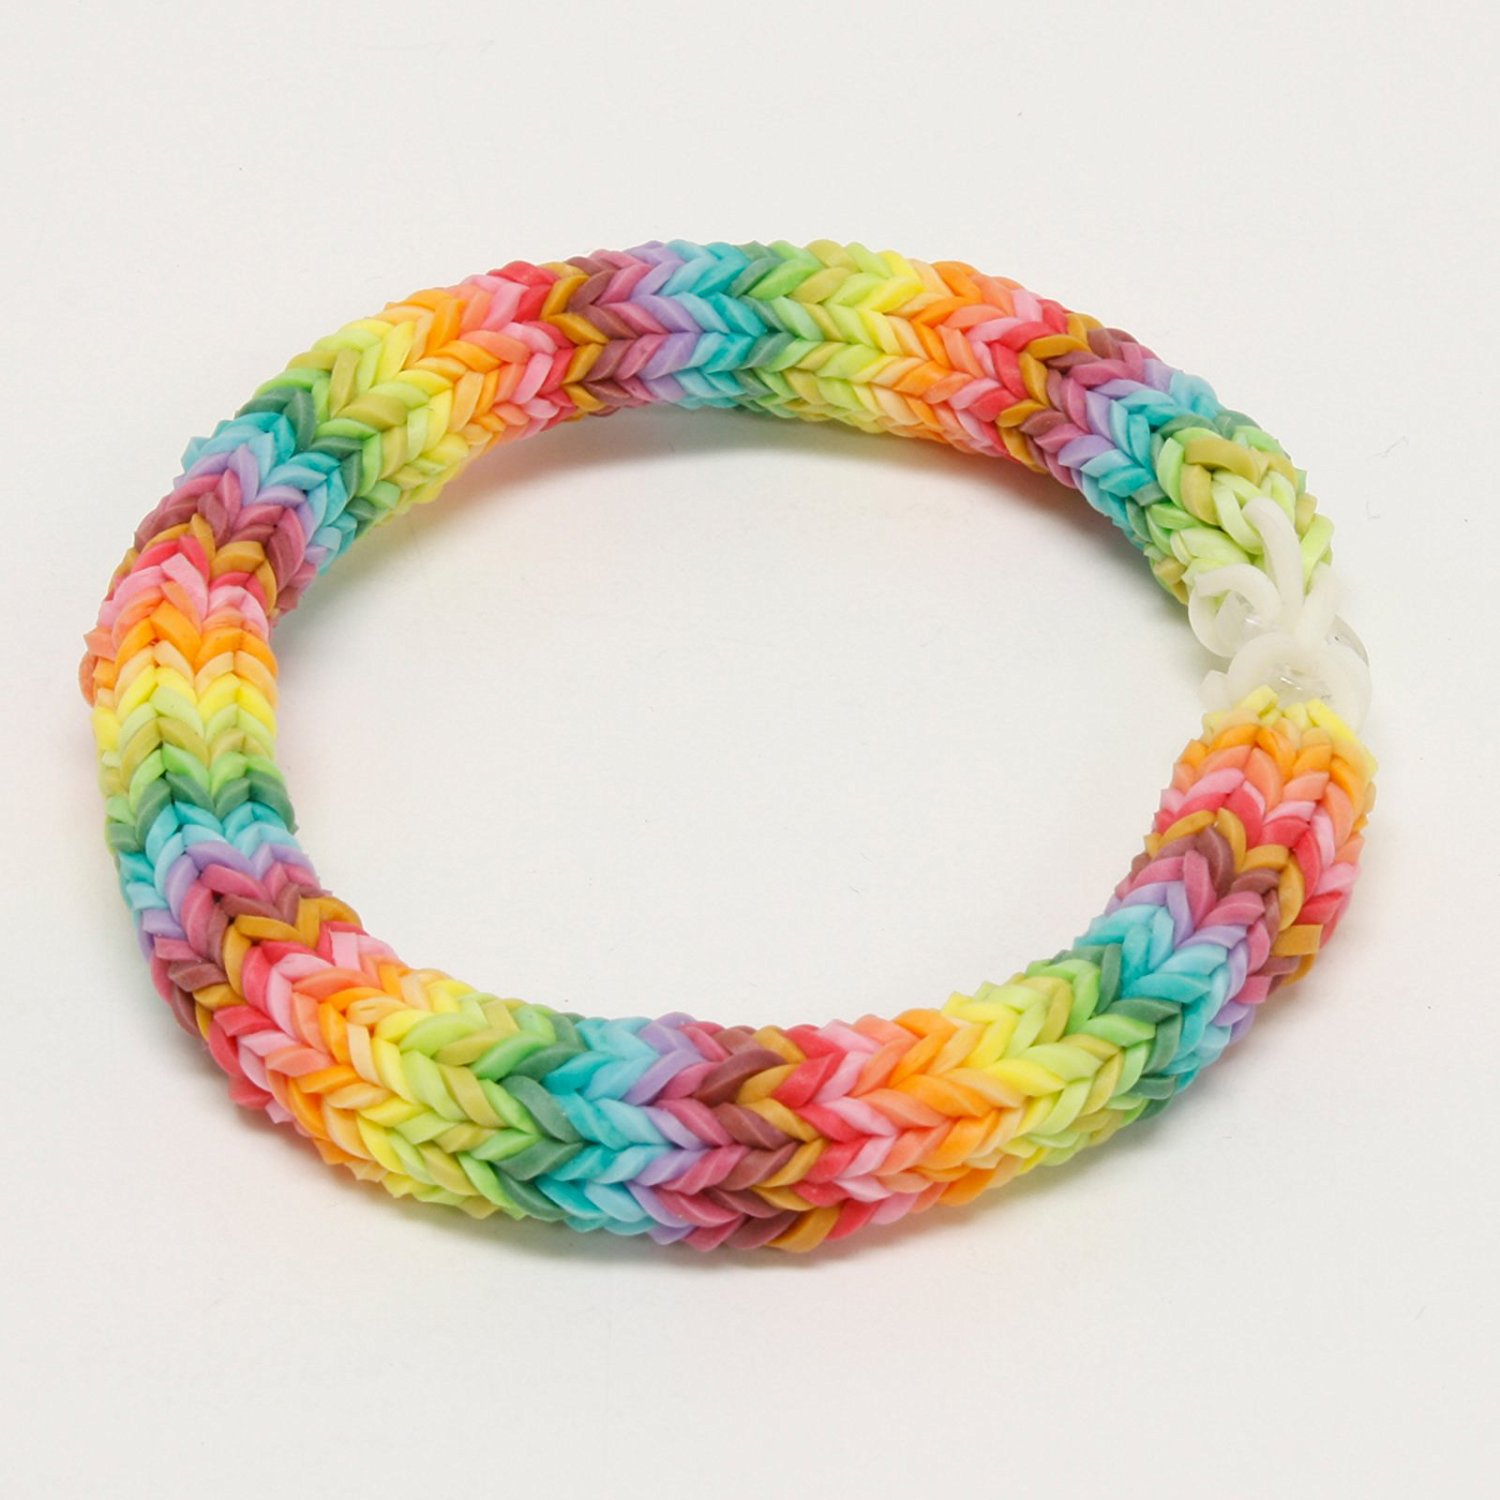 designs for loom band bracelets